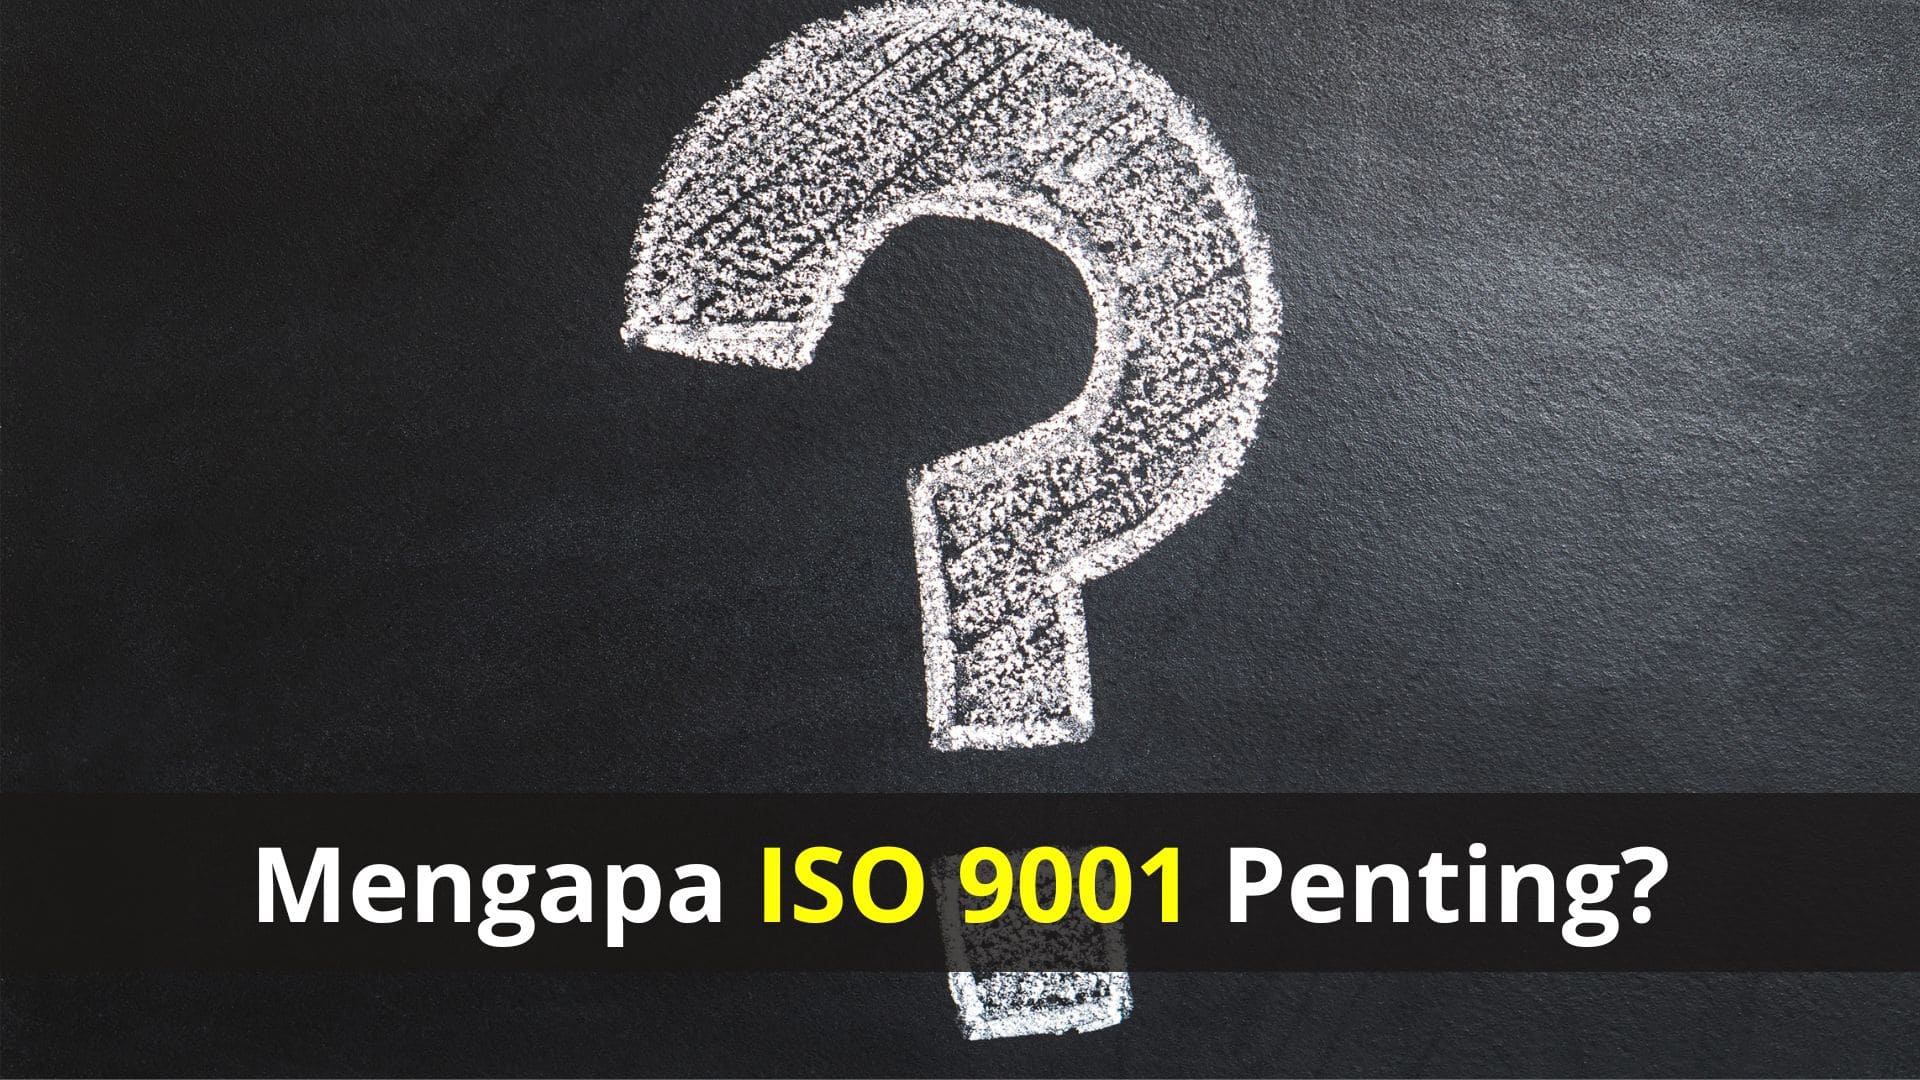 Biaya Konsultan ISO 9001